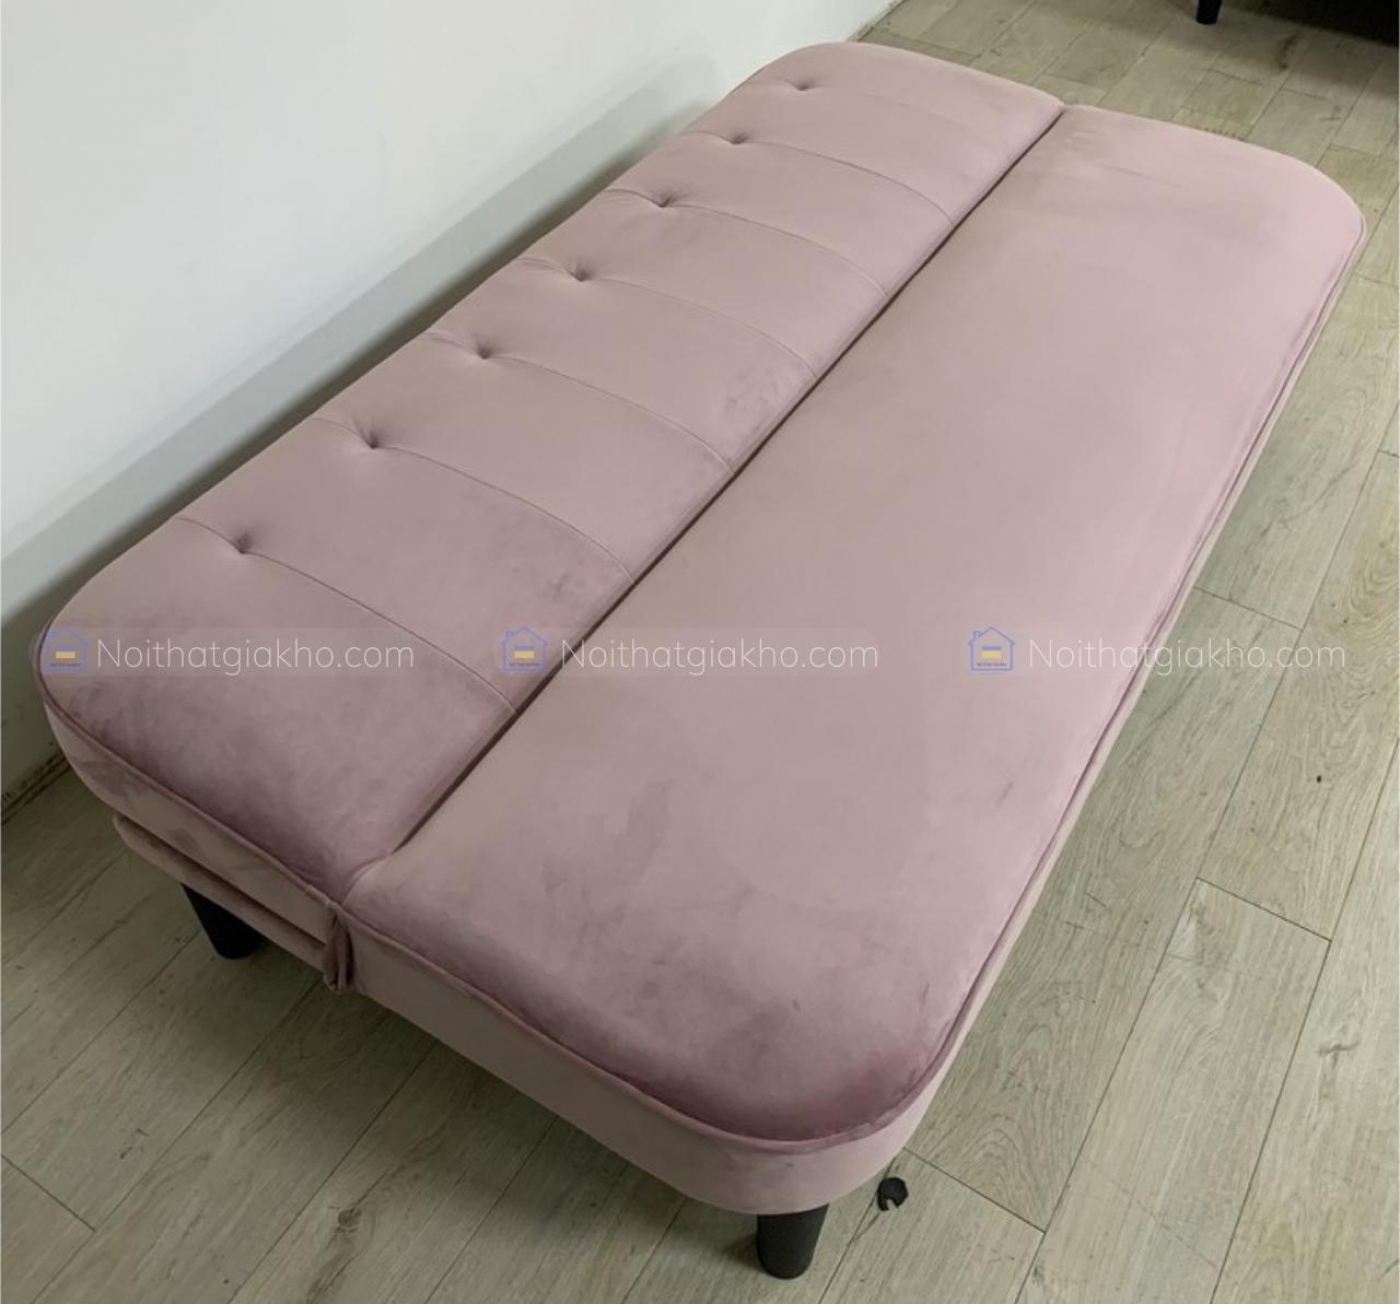 Ghế sofa giường Bumbee 1m7